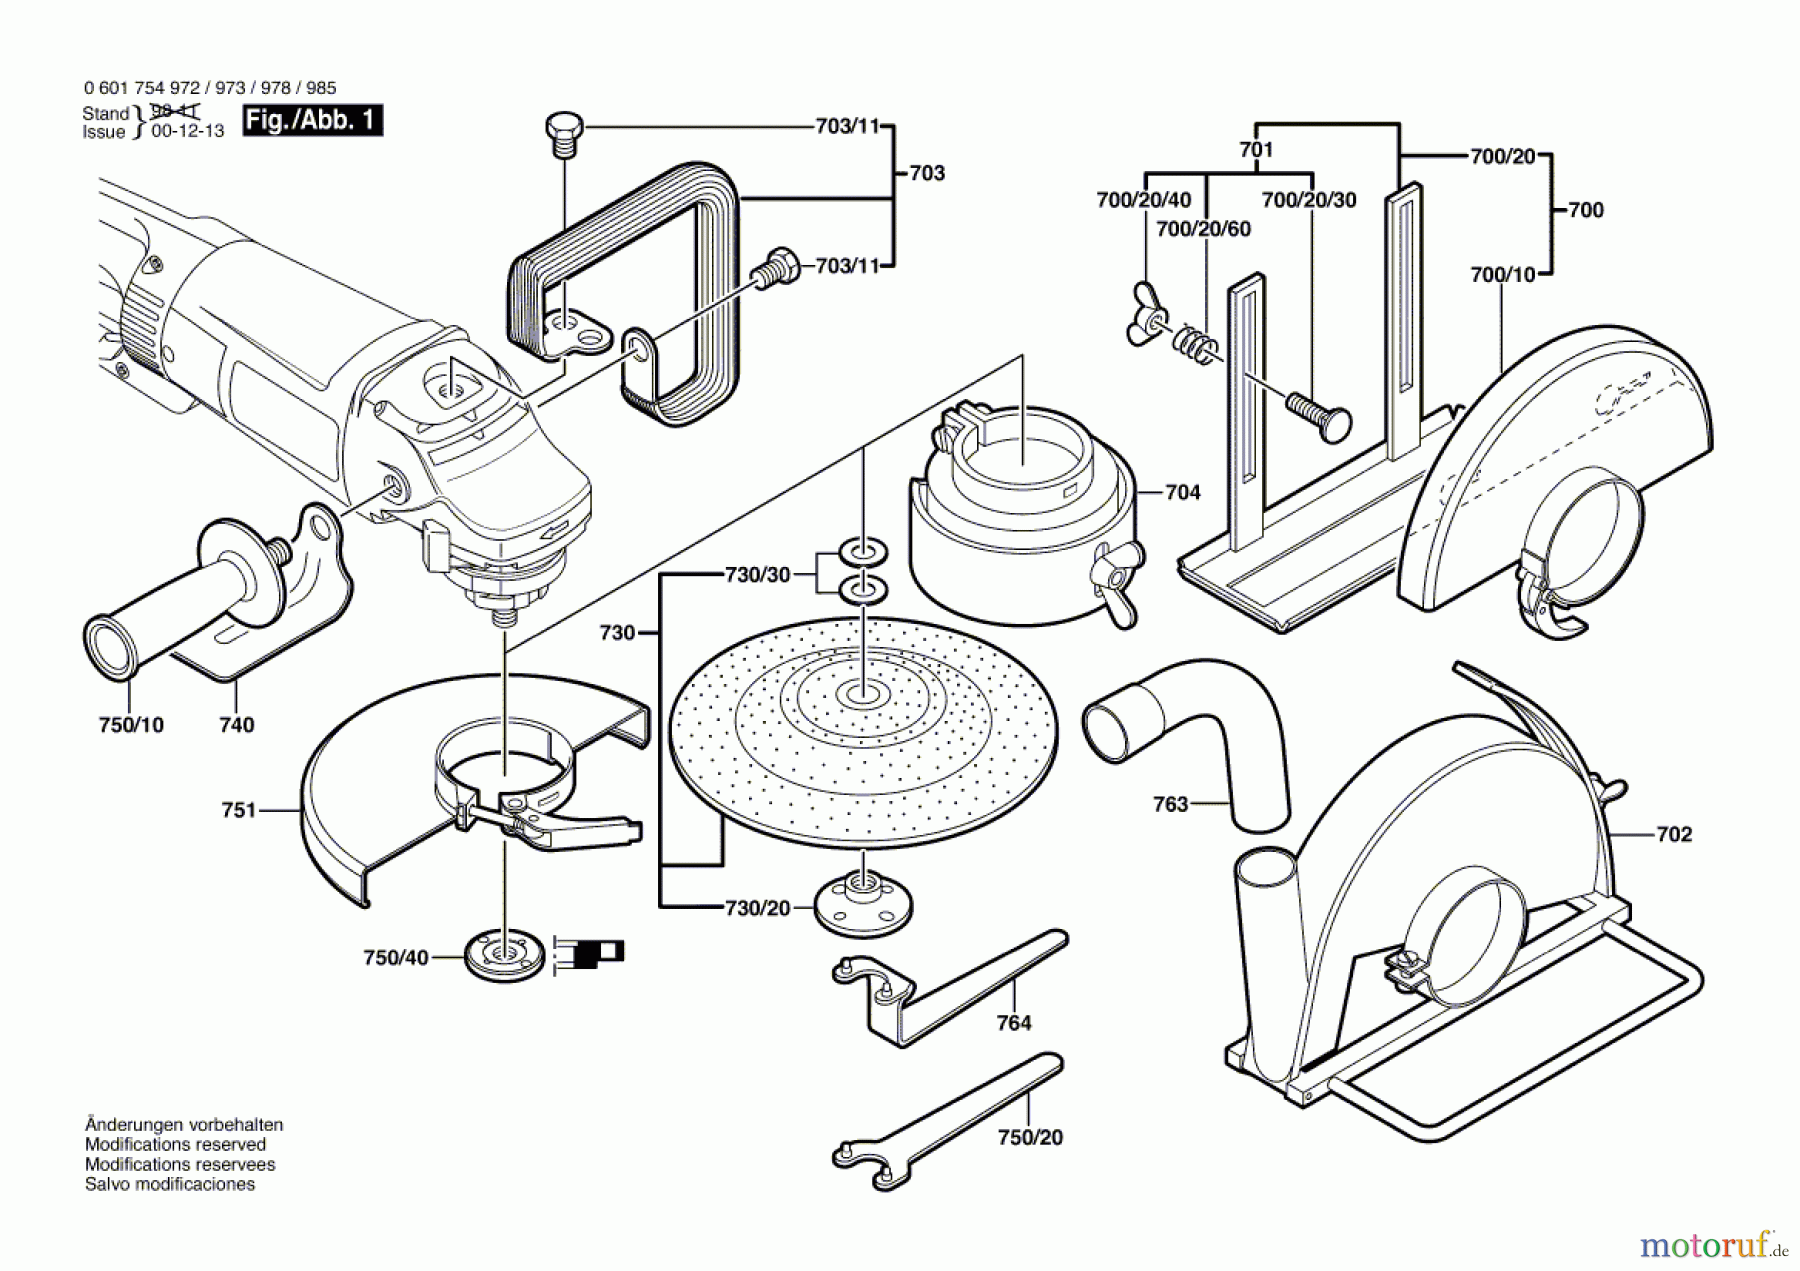  Bosch Werkzeug Winkelschleifer GWS 23-230 JS Seite 2